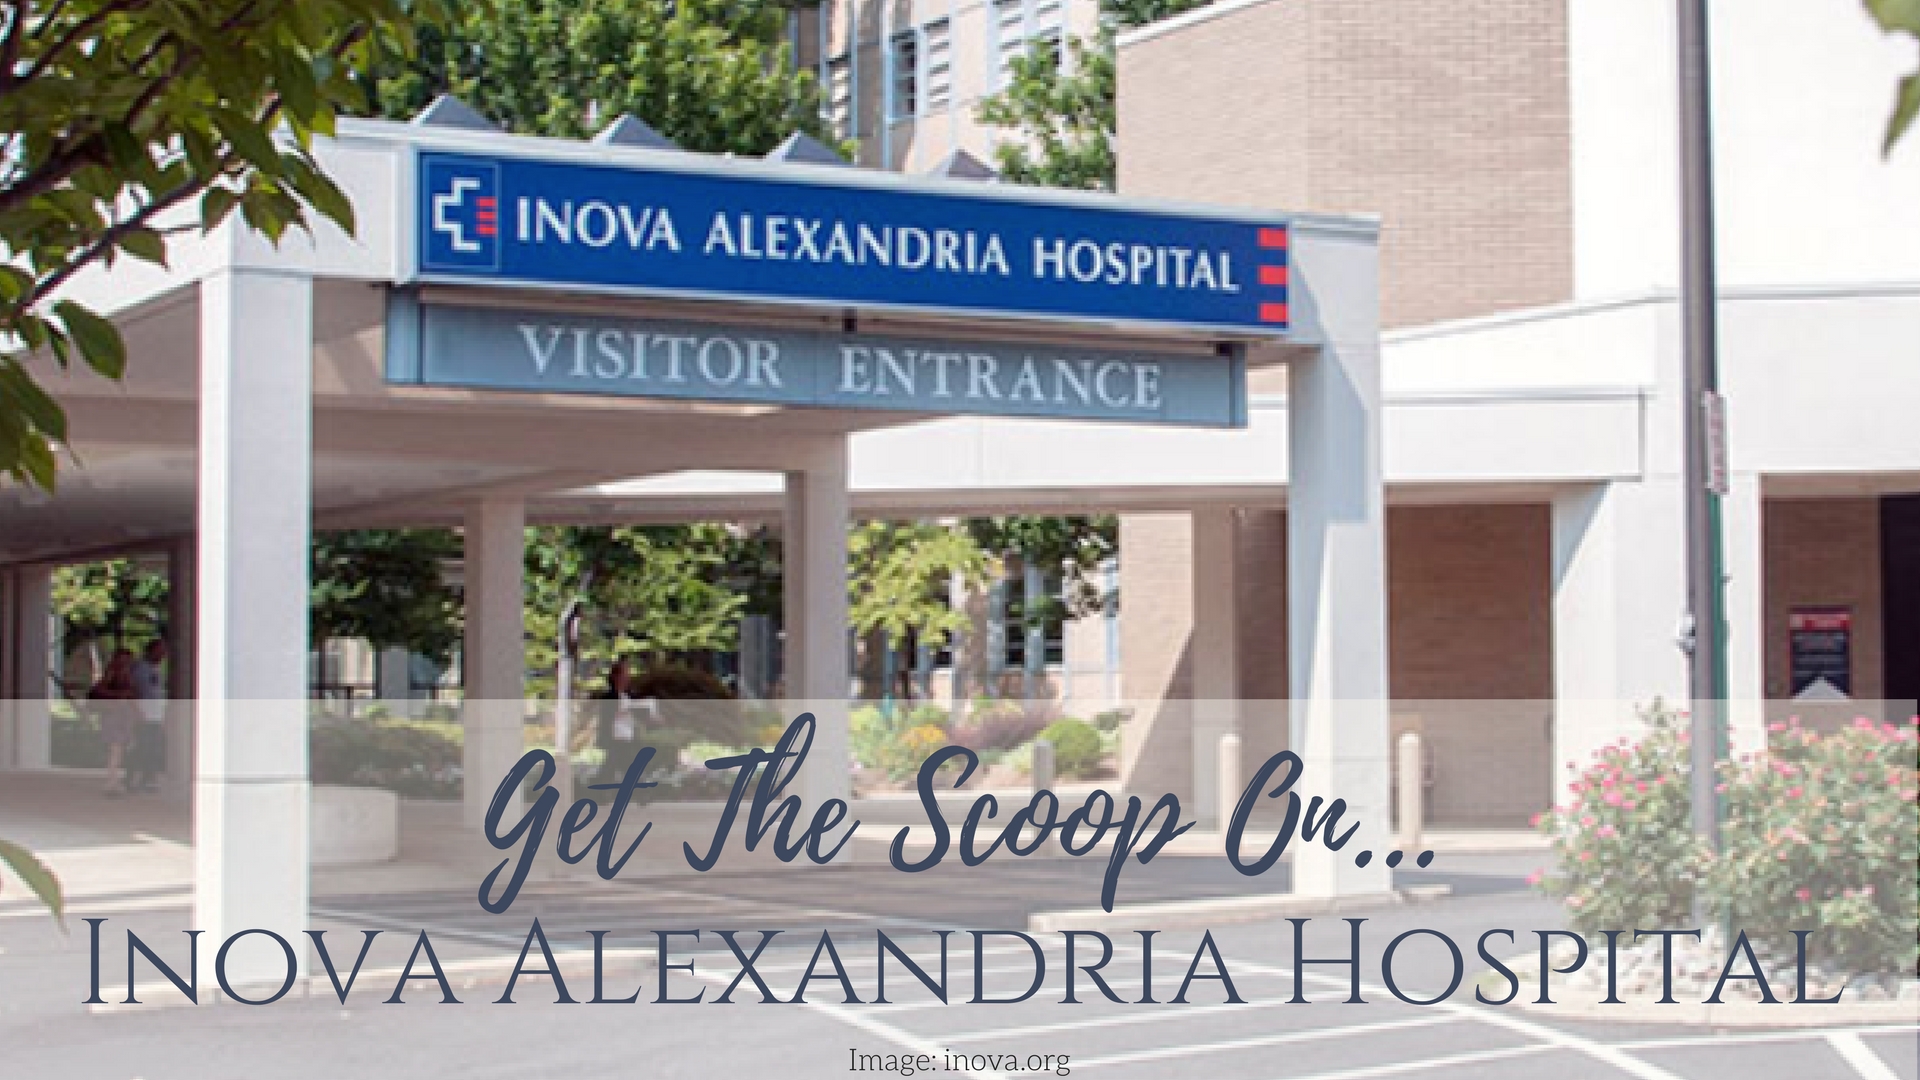 Inova alexandria hospital